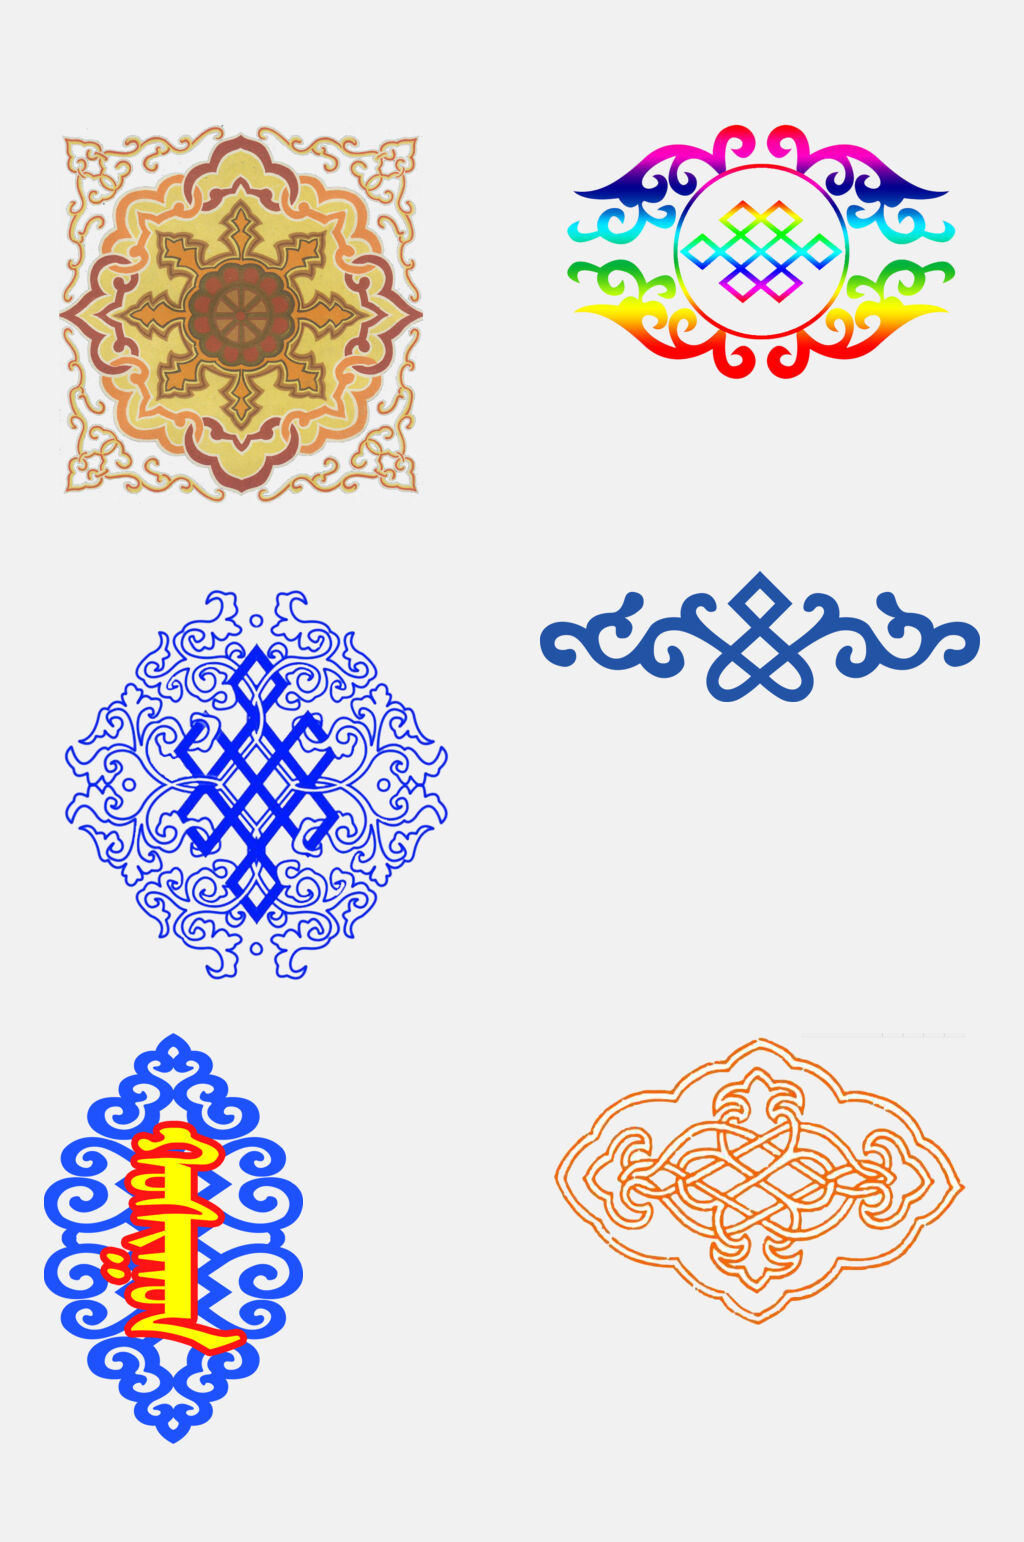 蒙古花纹图案简单图片